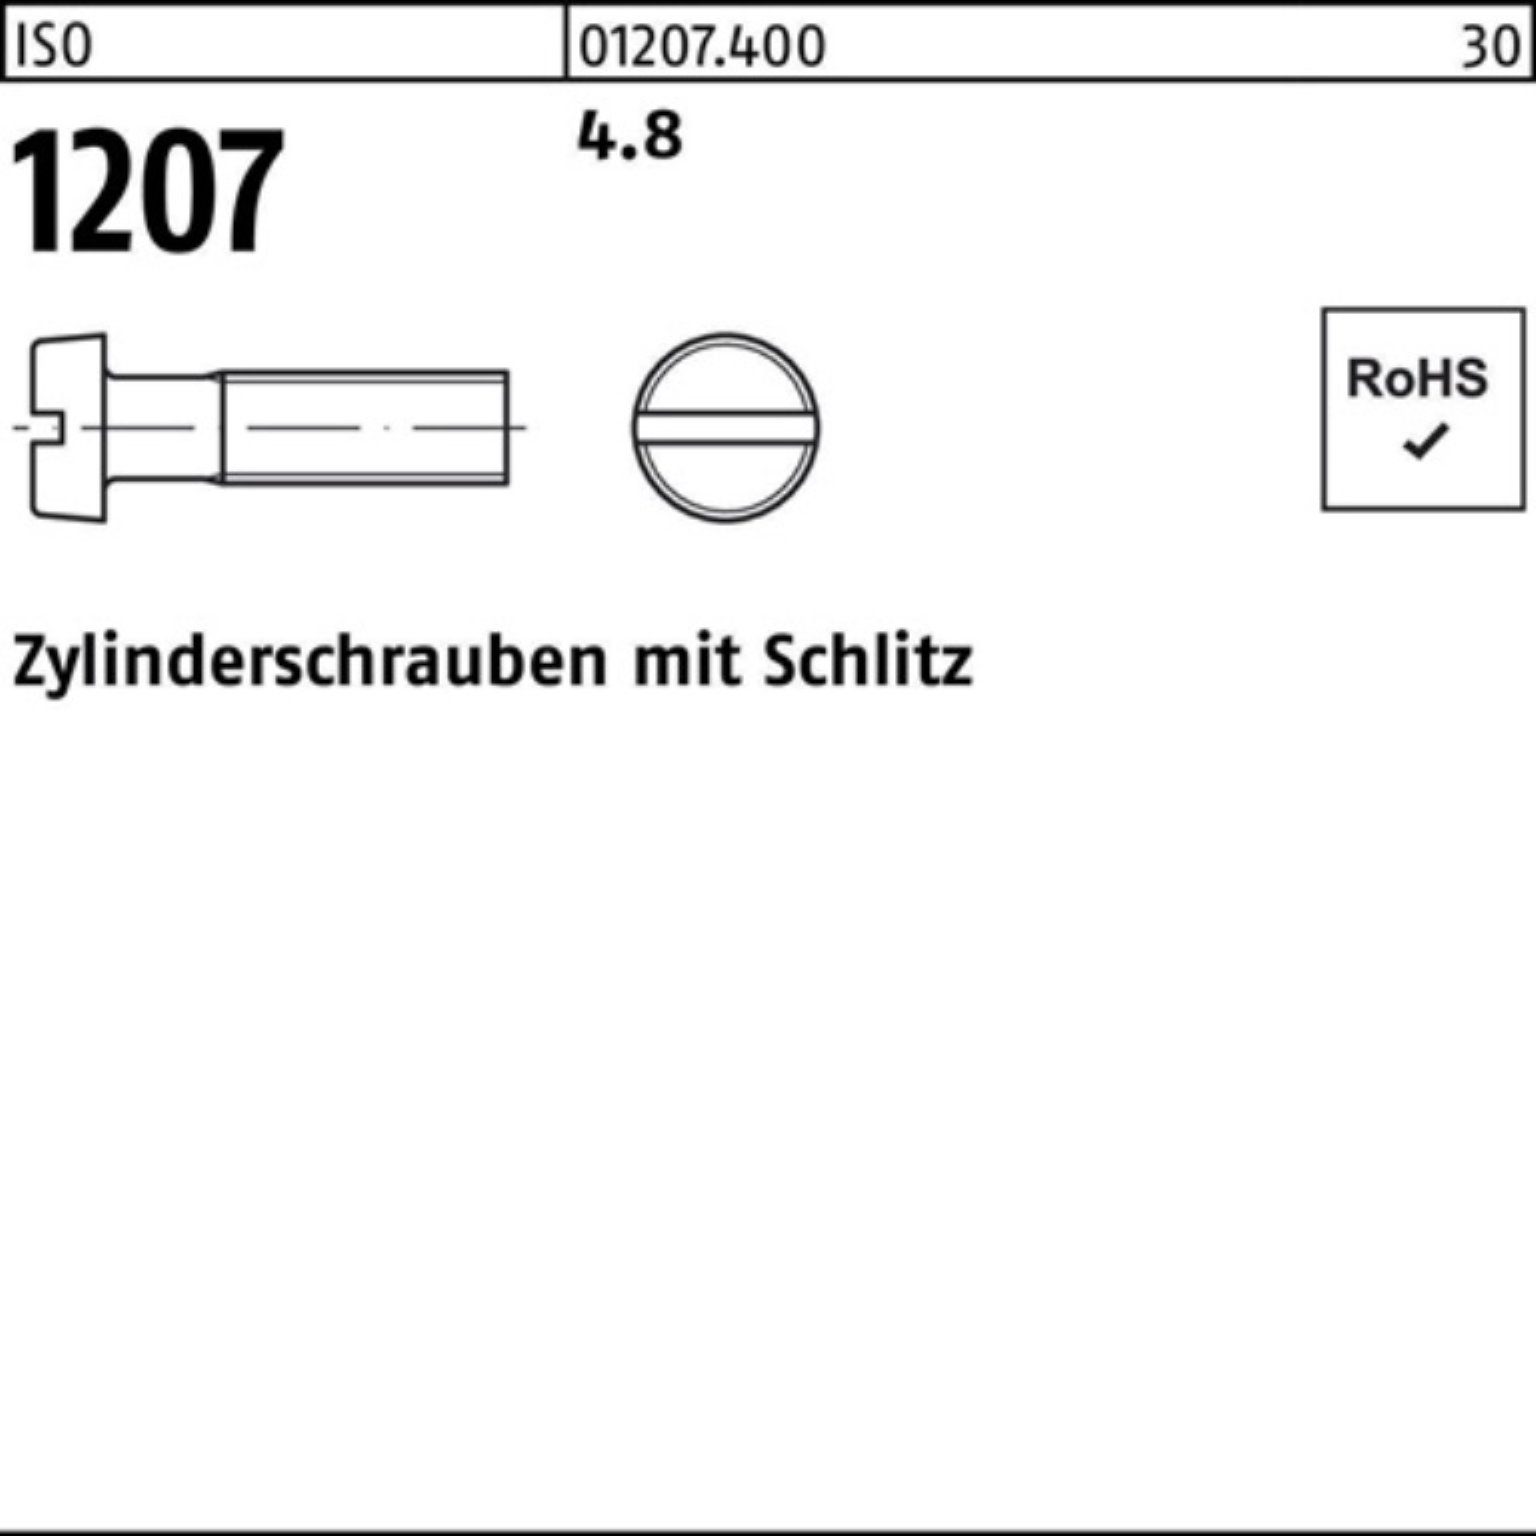 Endpreis im Ausverkauf Reyher Zylinderschraube 2000er Pack 8 M2,5x Zylinderschraube 2000 1207 4.8 ISO Stück Schlitz